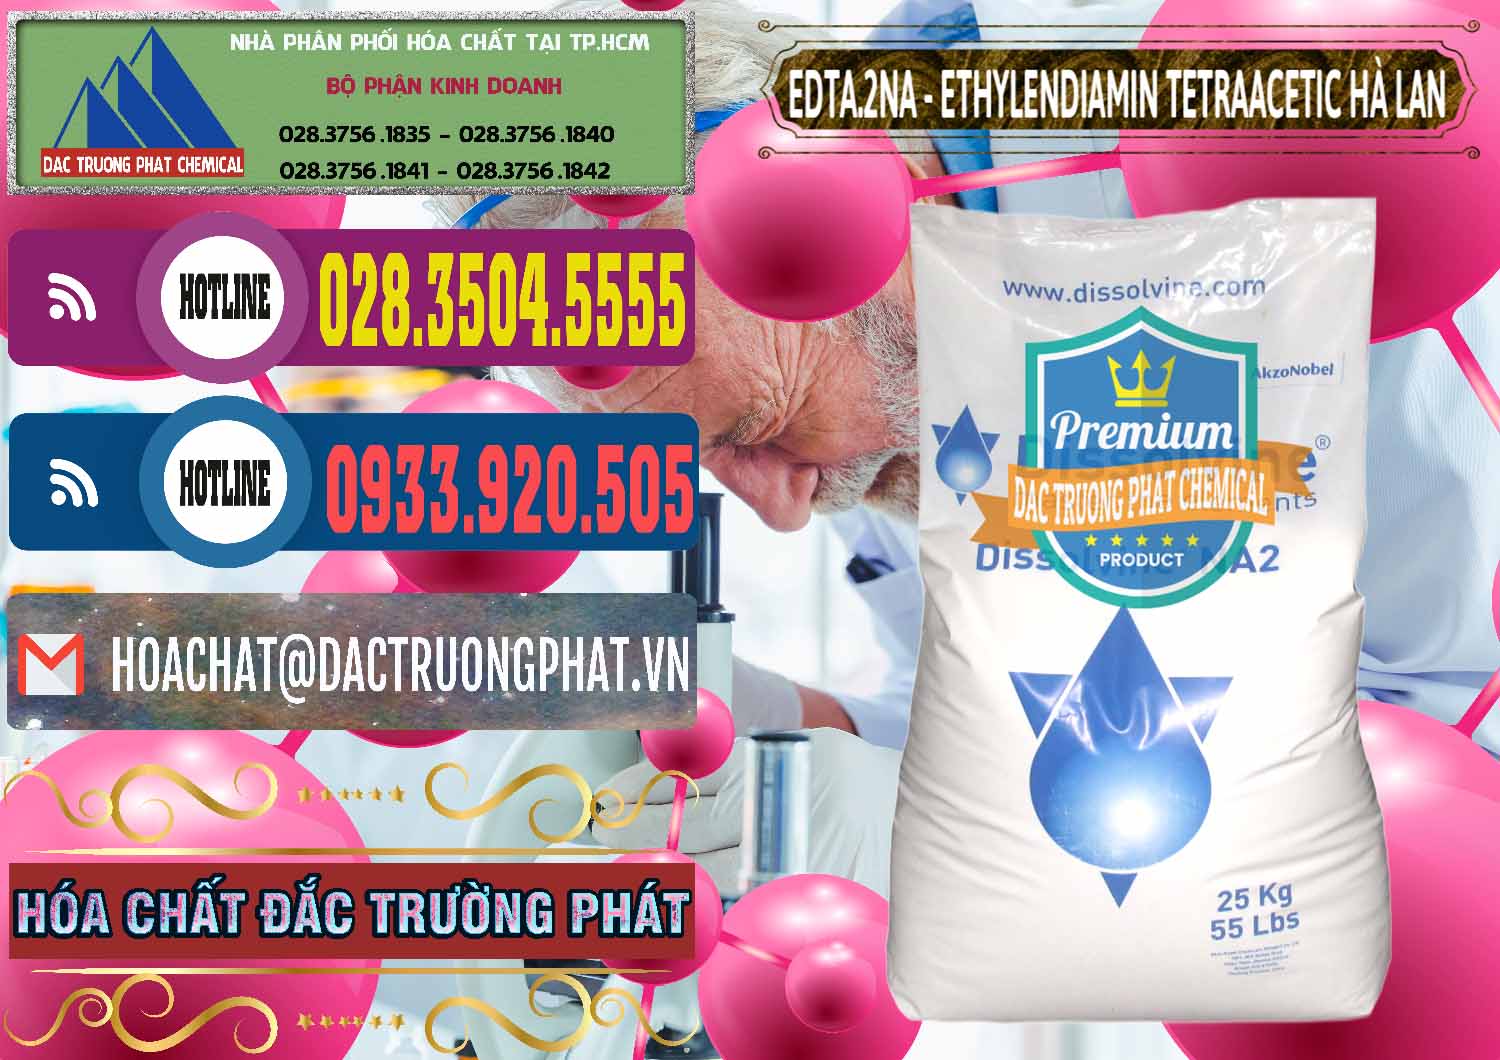 Đơn vị chuyên cung cấp và bán EDTA.2NA - Ethylendiamin Tetraacetic Dissolvine Hà Lan Netherlands - 0064 - Đơn vị chuyên kinh doanh ( phân phối ) hóa chất tại TP.HCM - muabanhoachat.com.vn